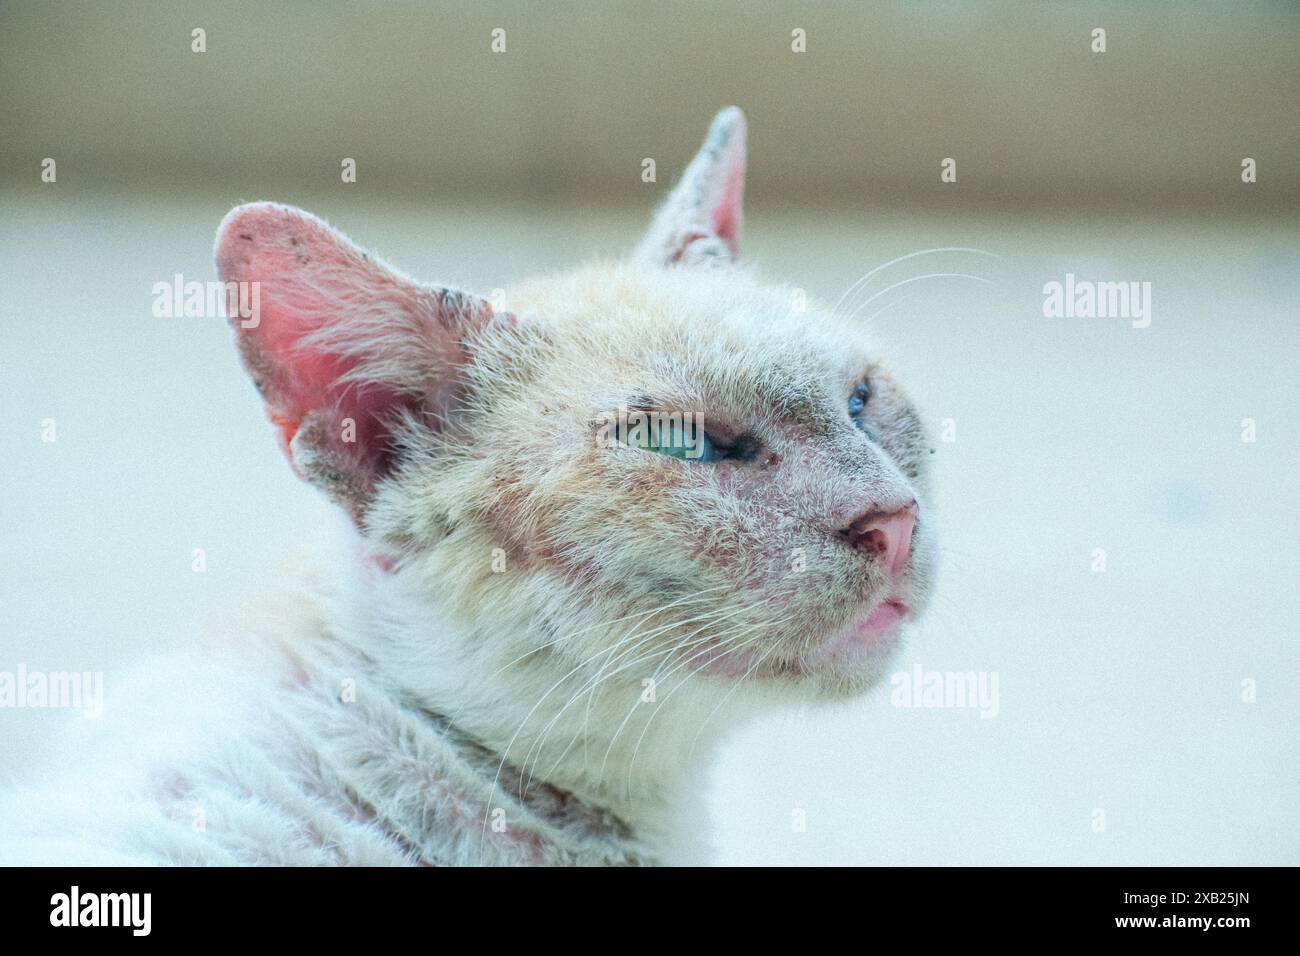 Ein herzerwärmendes Bild einer Katze, die einen Moment der Entspannung genießt, während sie einen Juckreiz zerkratzt. Sanfte Beleuchtung und dezente Texturen. Stockfoto